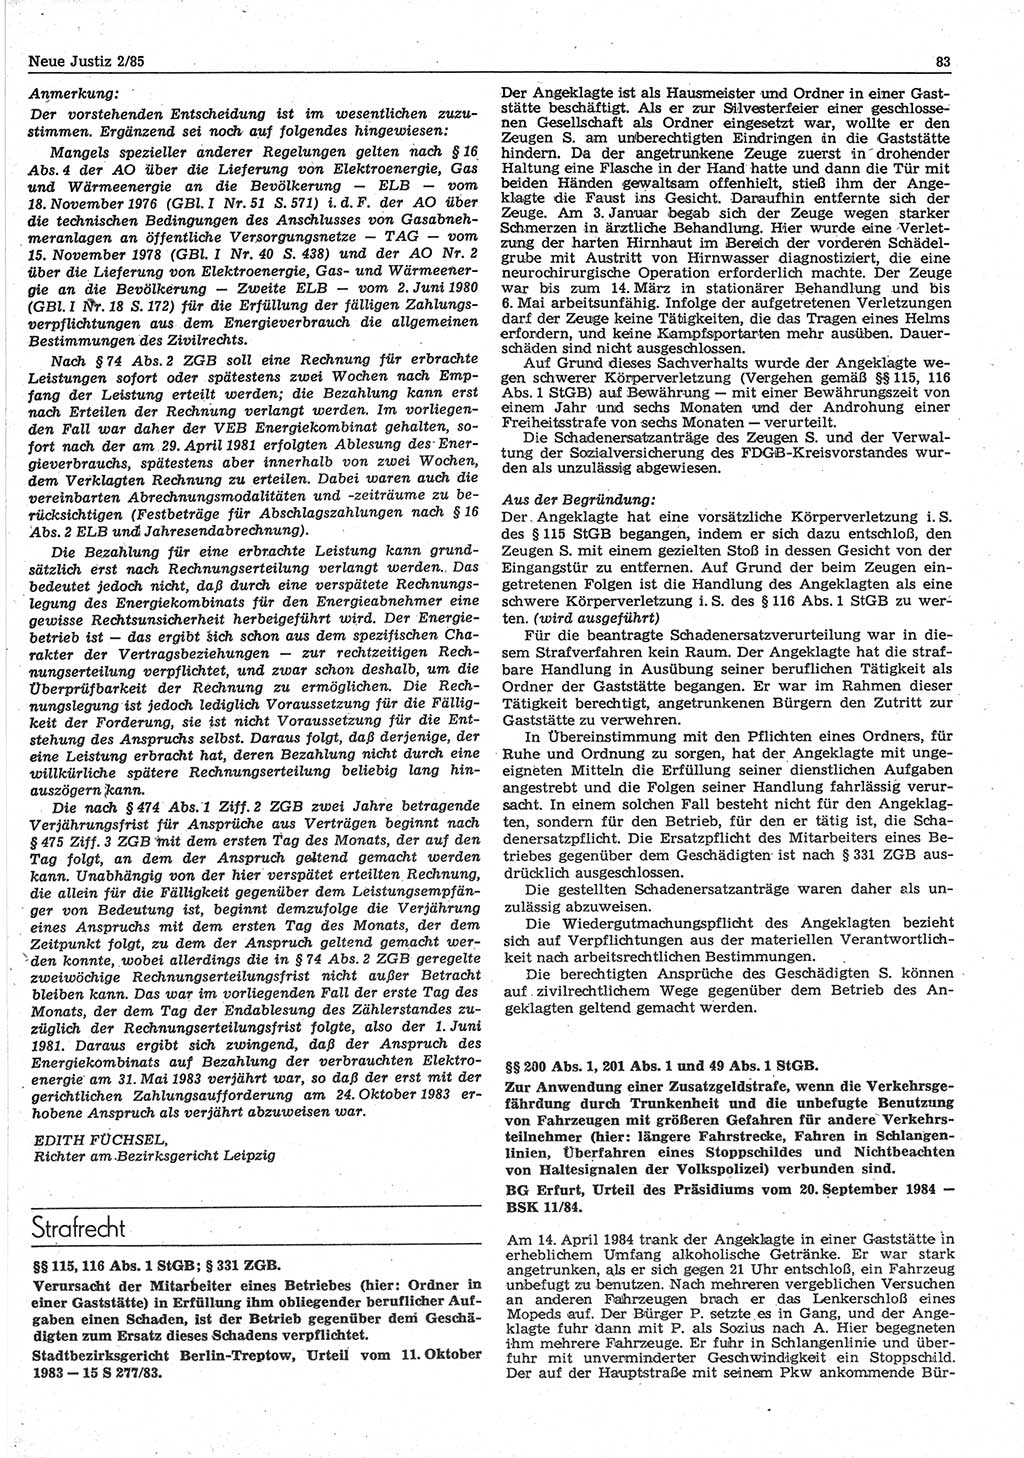 Neue Justiz (NJ), Zeitschrift für sozialistisches Recht und Gesetzlichkeit [Deutsche Demokratische Republik (DDR)], 39. Jahrgang 1985, Seite 83 (NJ DDR 1985, S. 83)